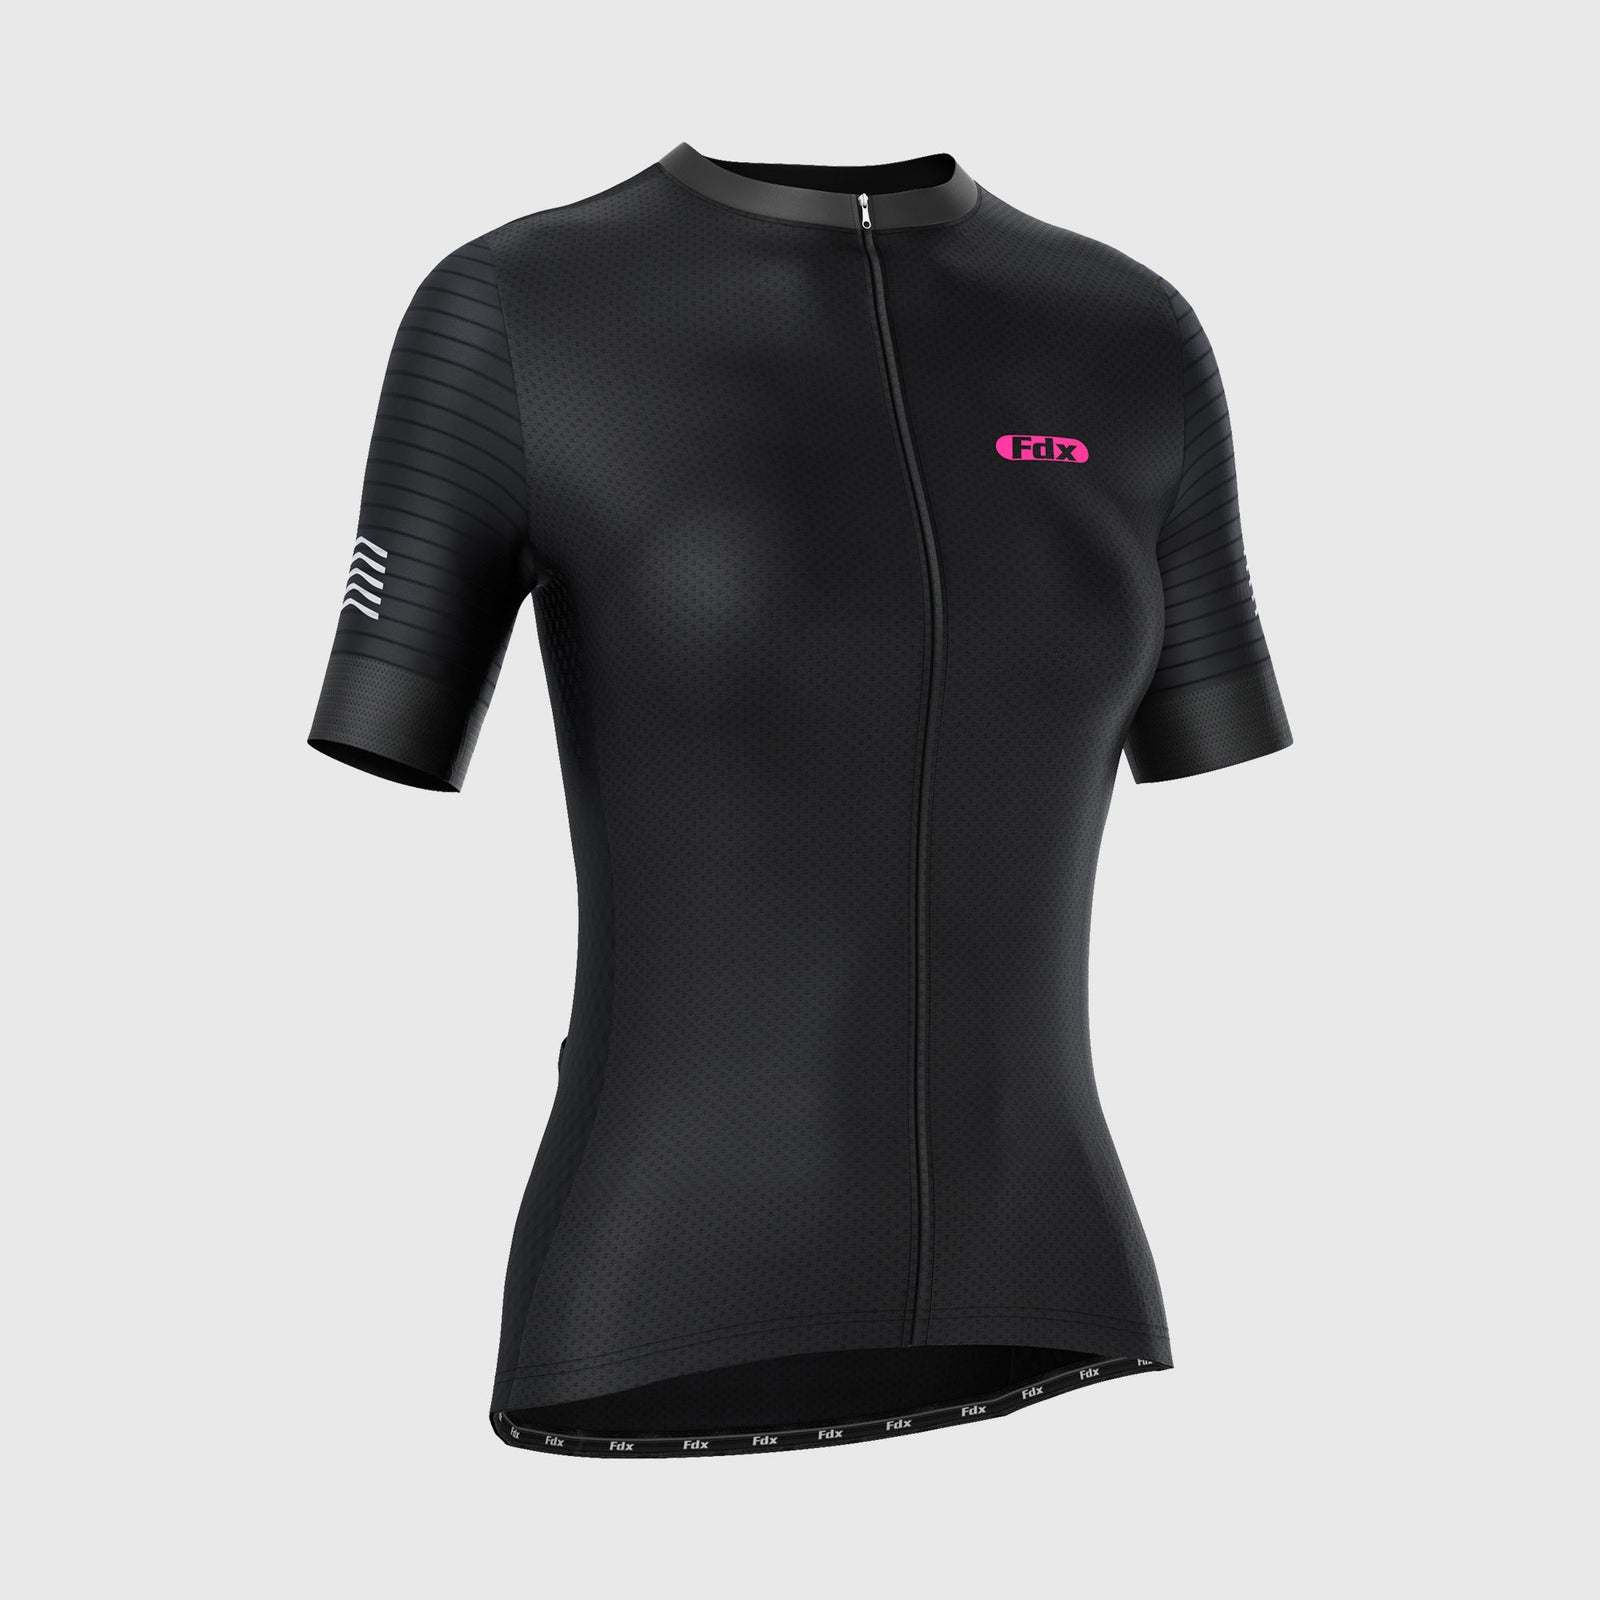 Fdx Womens Black Short Sleeve Cycling Jersey for Summer Best Road Bike Wear Top Light Weight, Full Zipper, Pockets & Hi-viz Reflectors - Essential